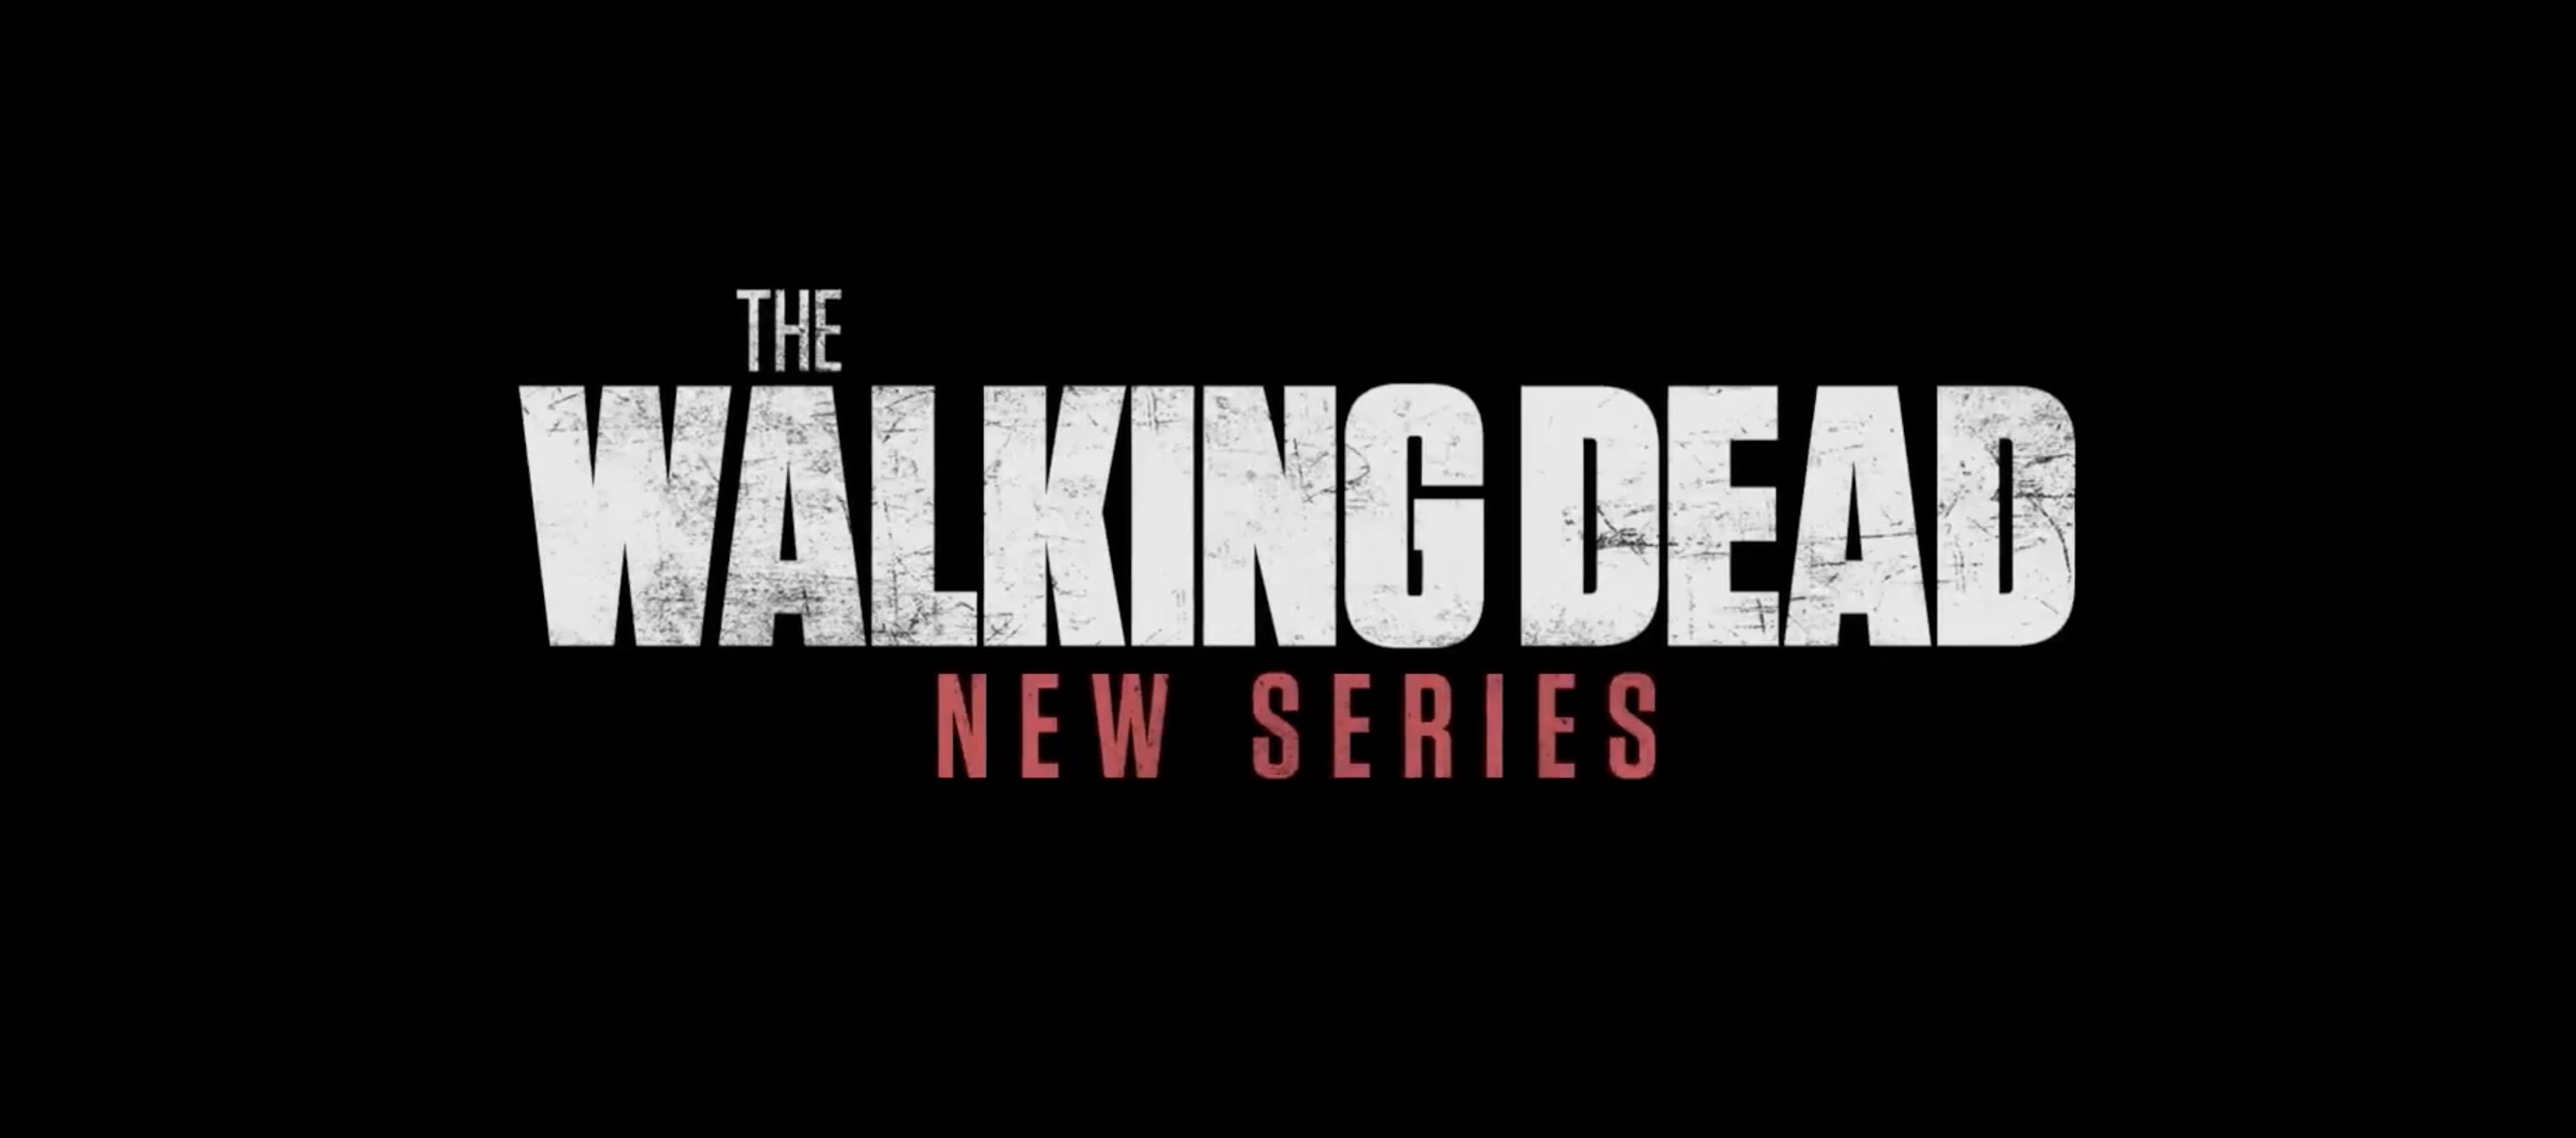 The Walking Dead : le nouveau spin-off dévoile un premier teaser